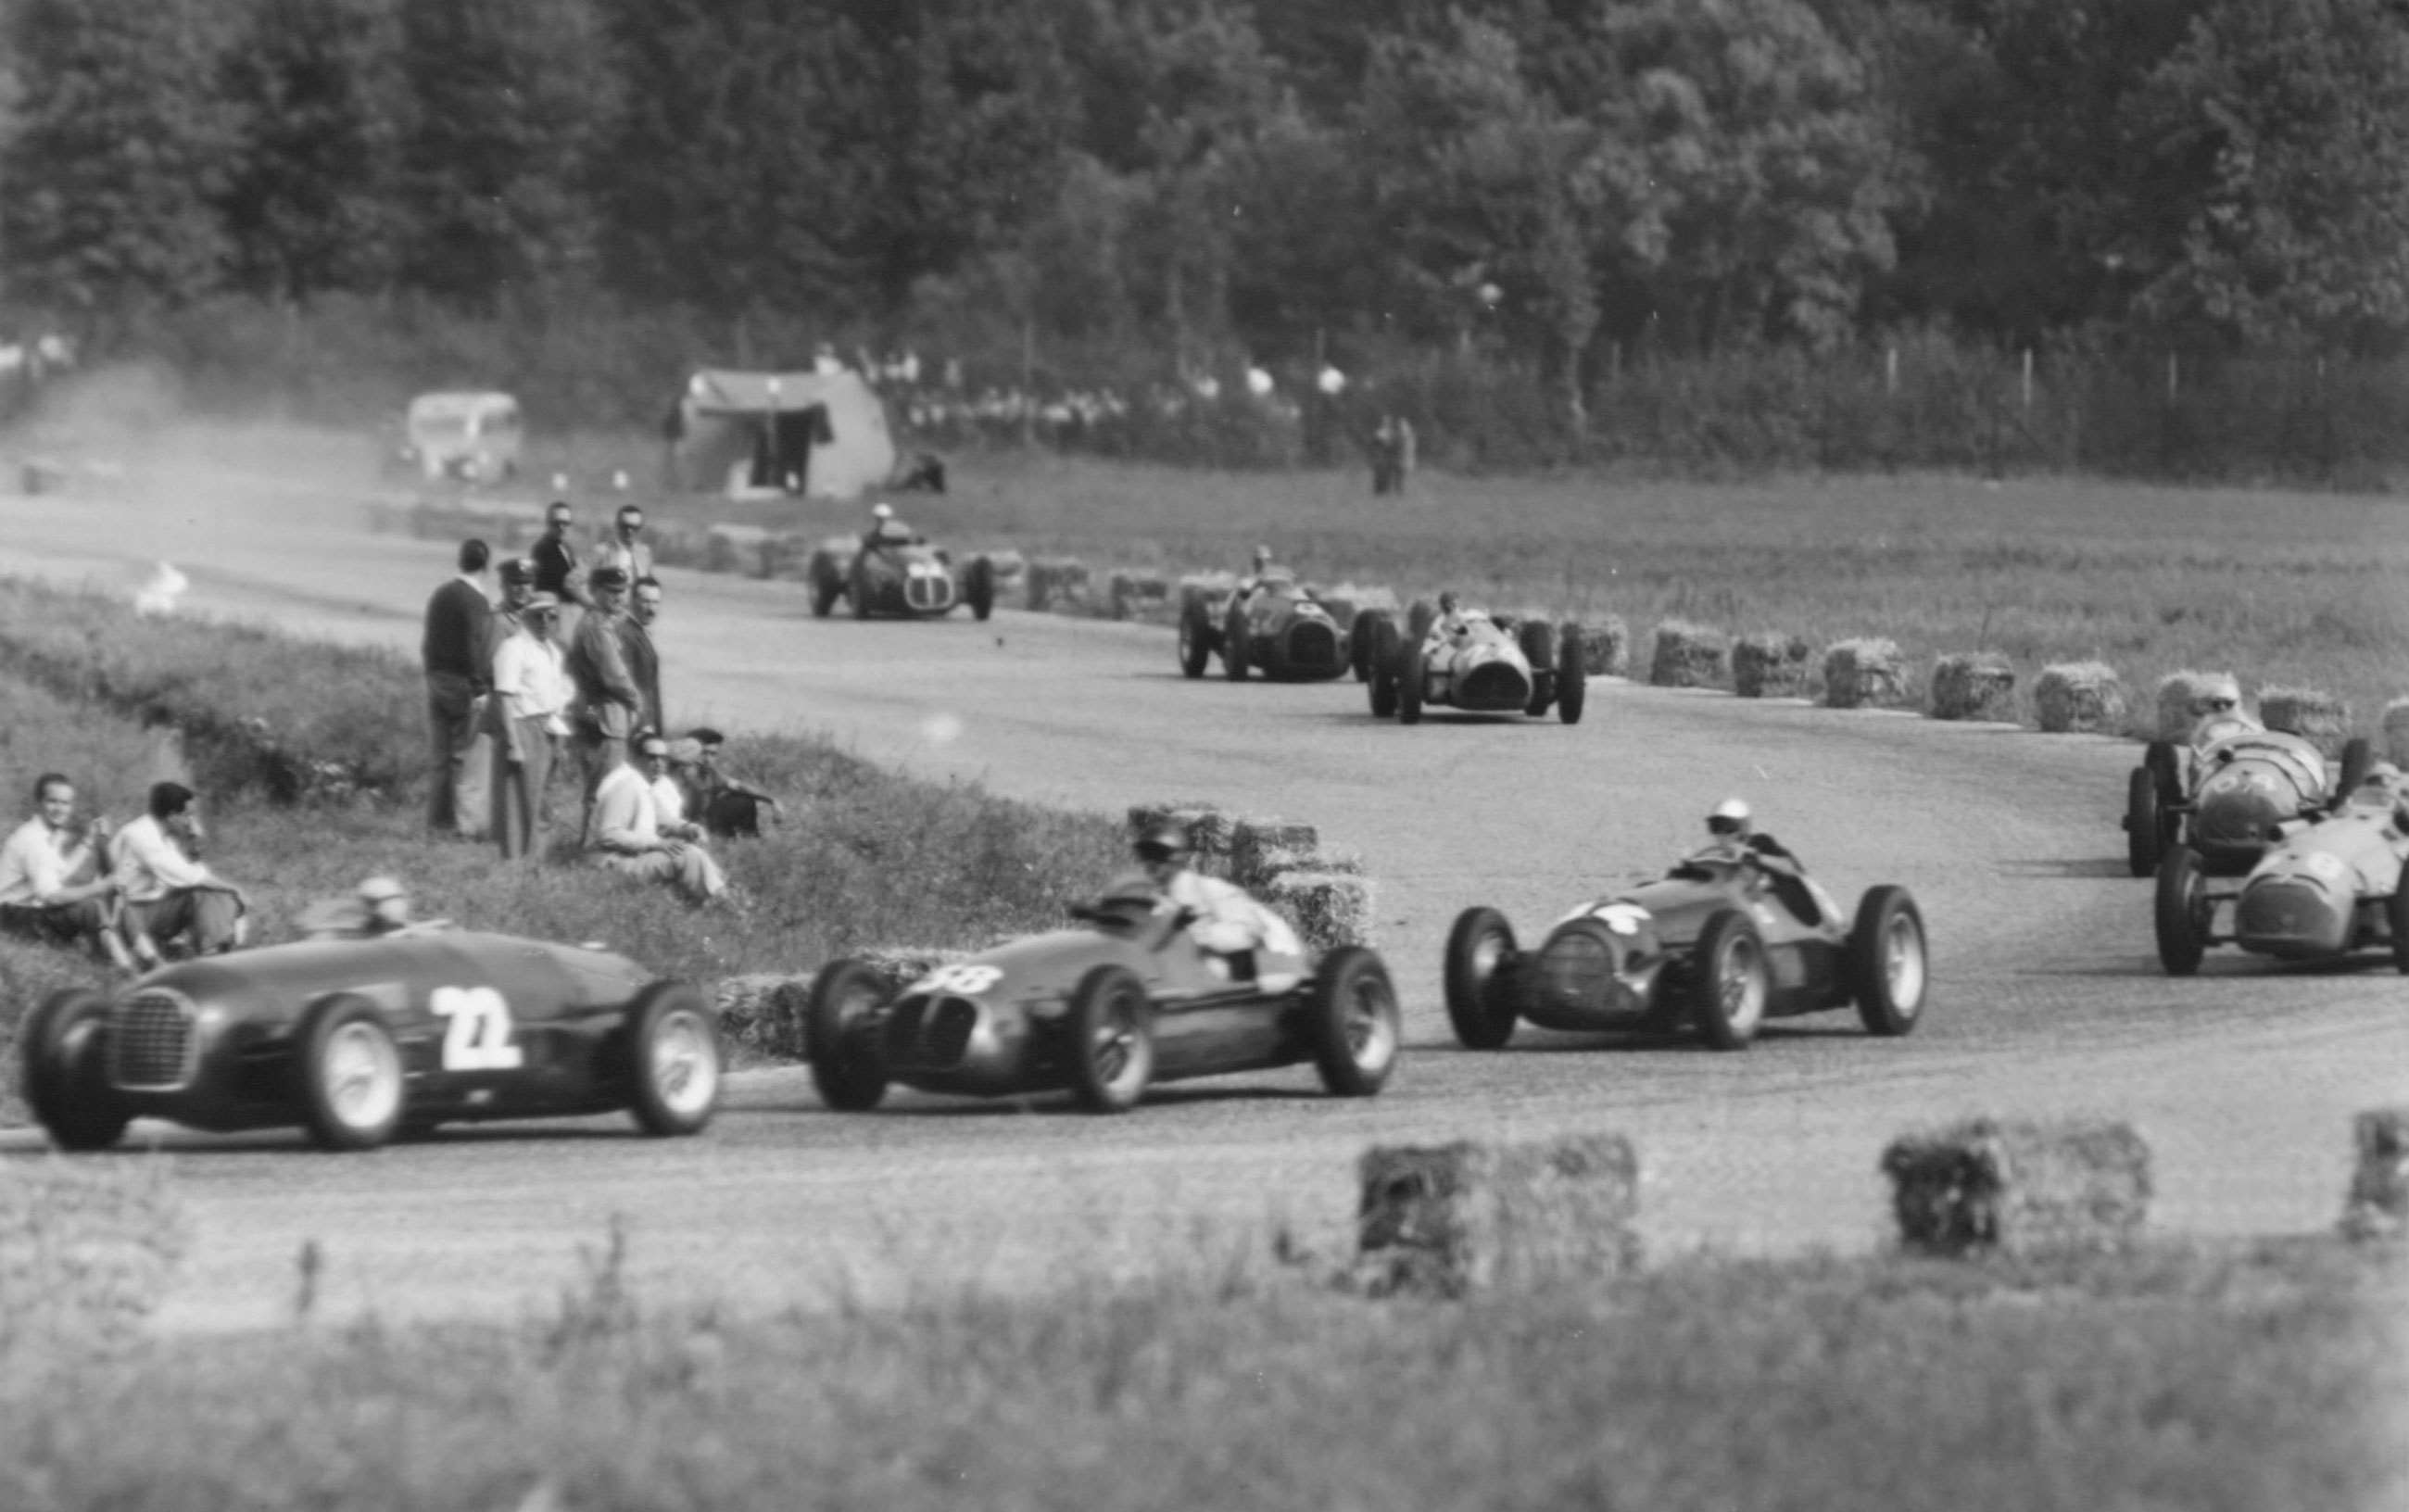 The 1950 Italian Grand Prix at Monza.